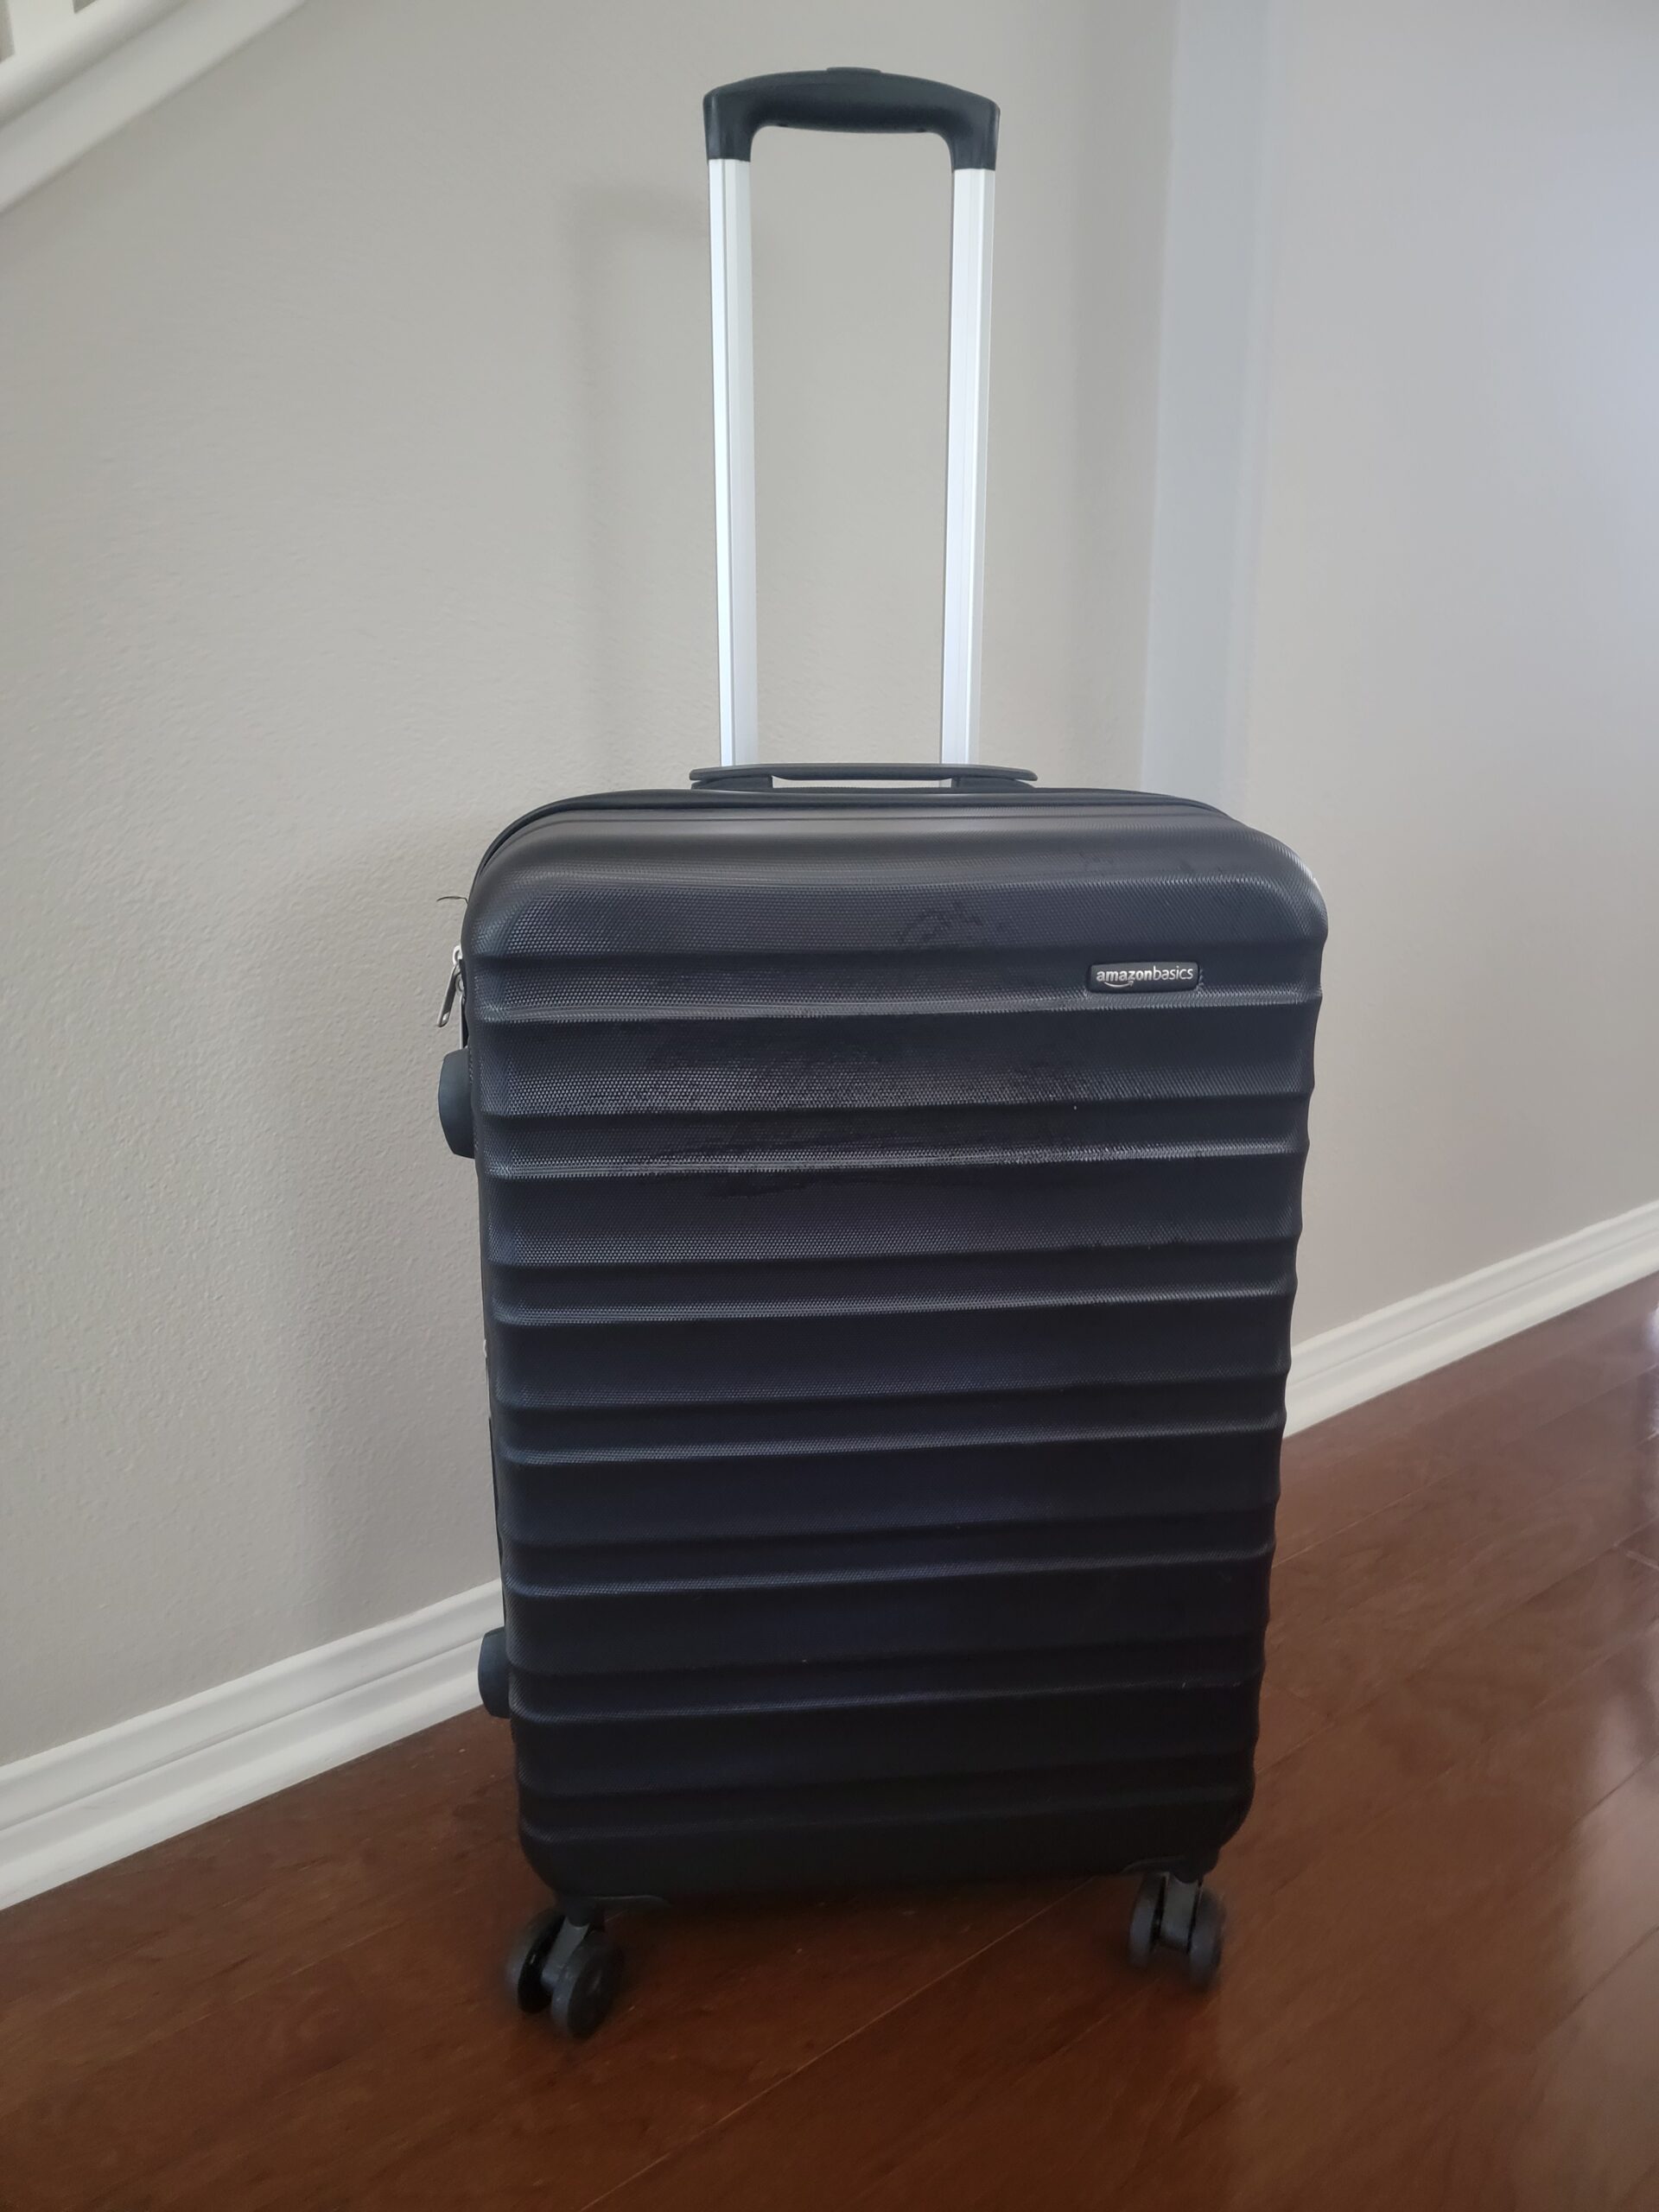 Amazon Basics Suitcase, 26 inch